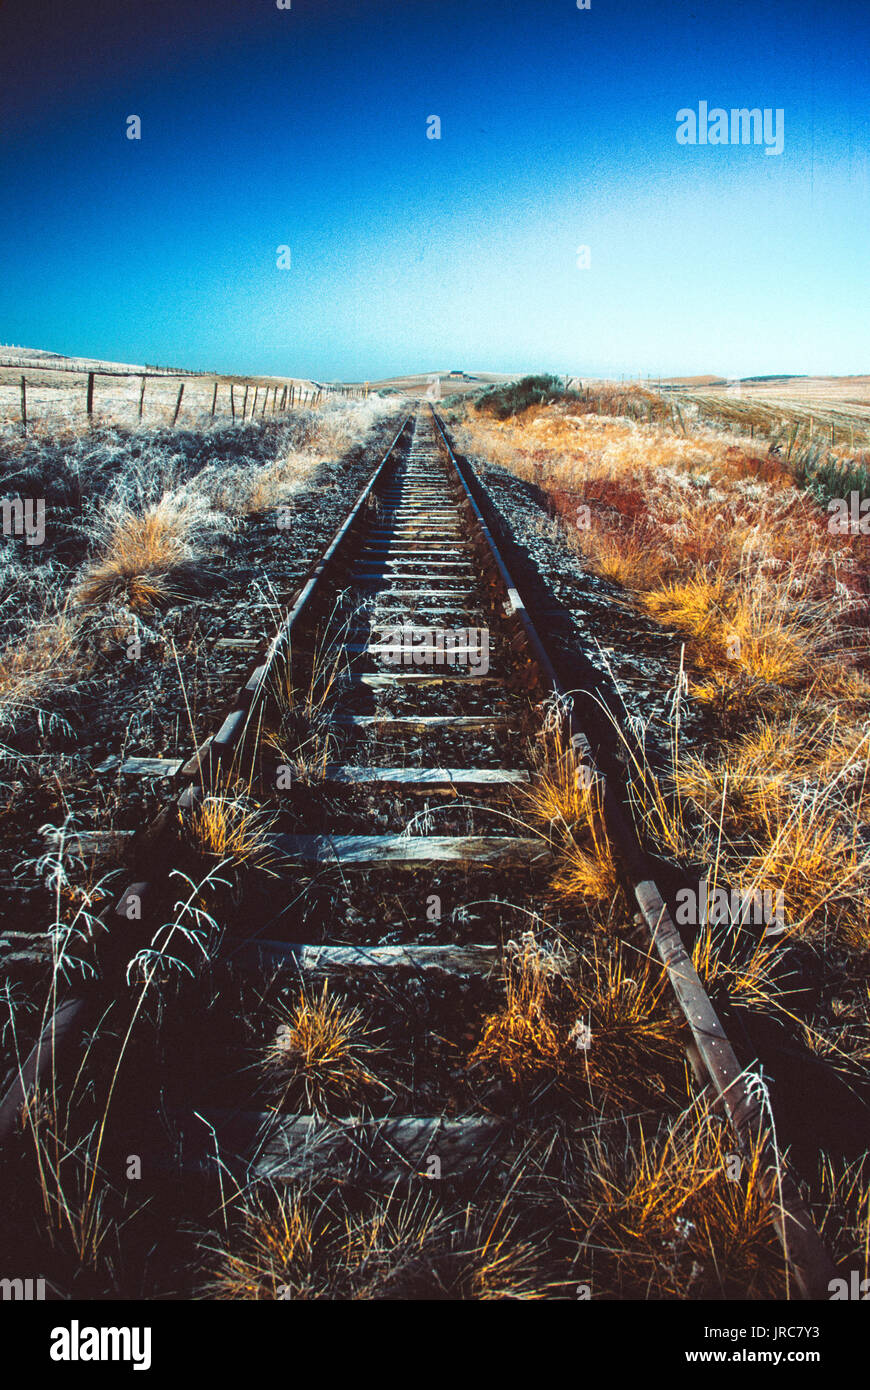 Las vías de ferrocarril en desuso en el campo Foto de stock